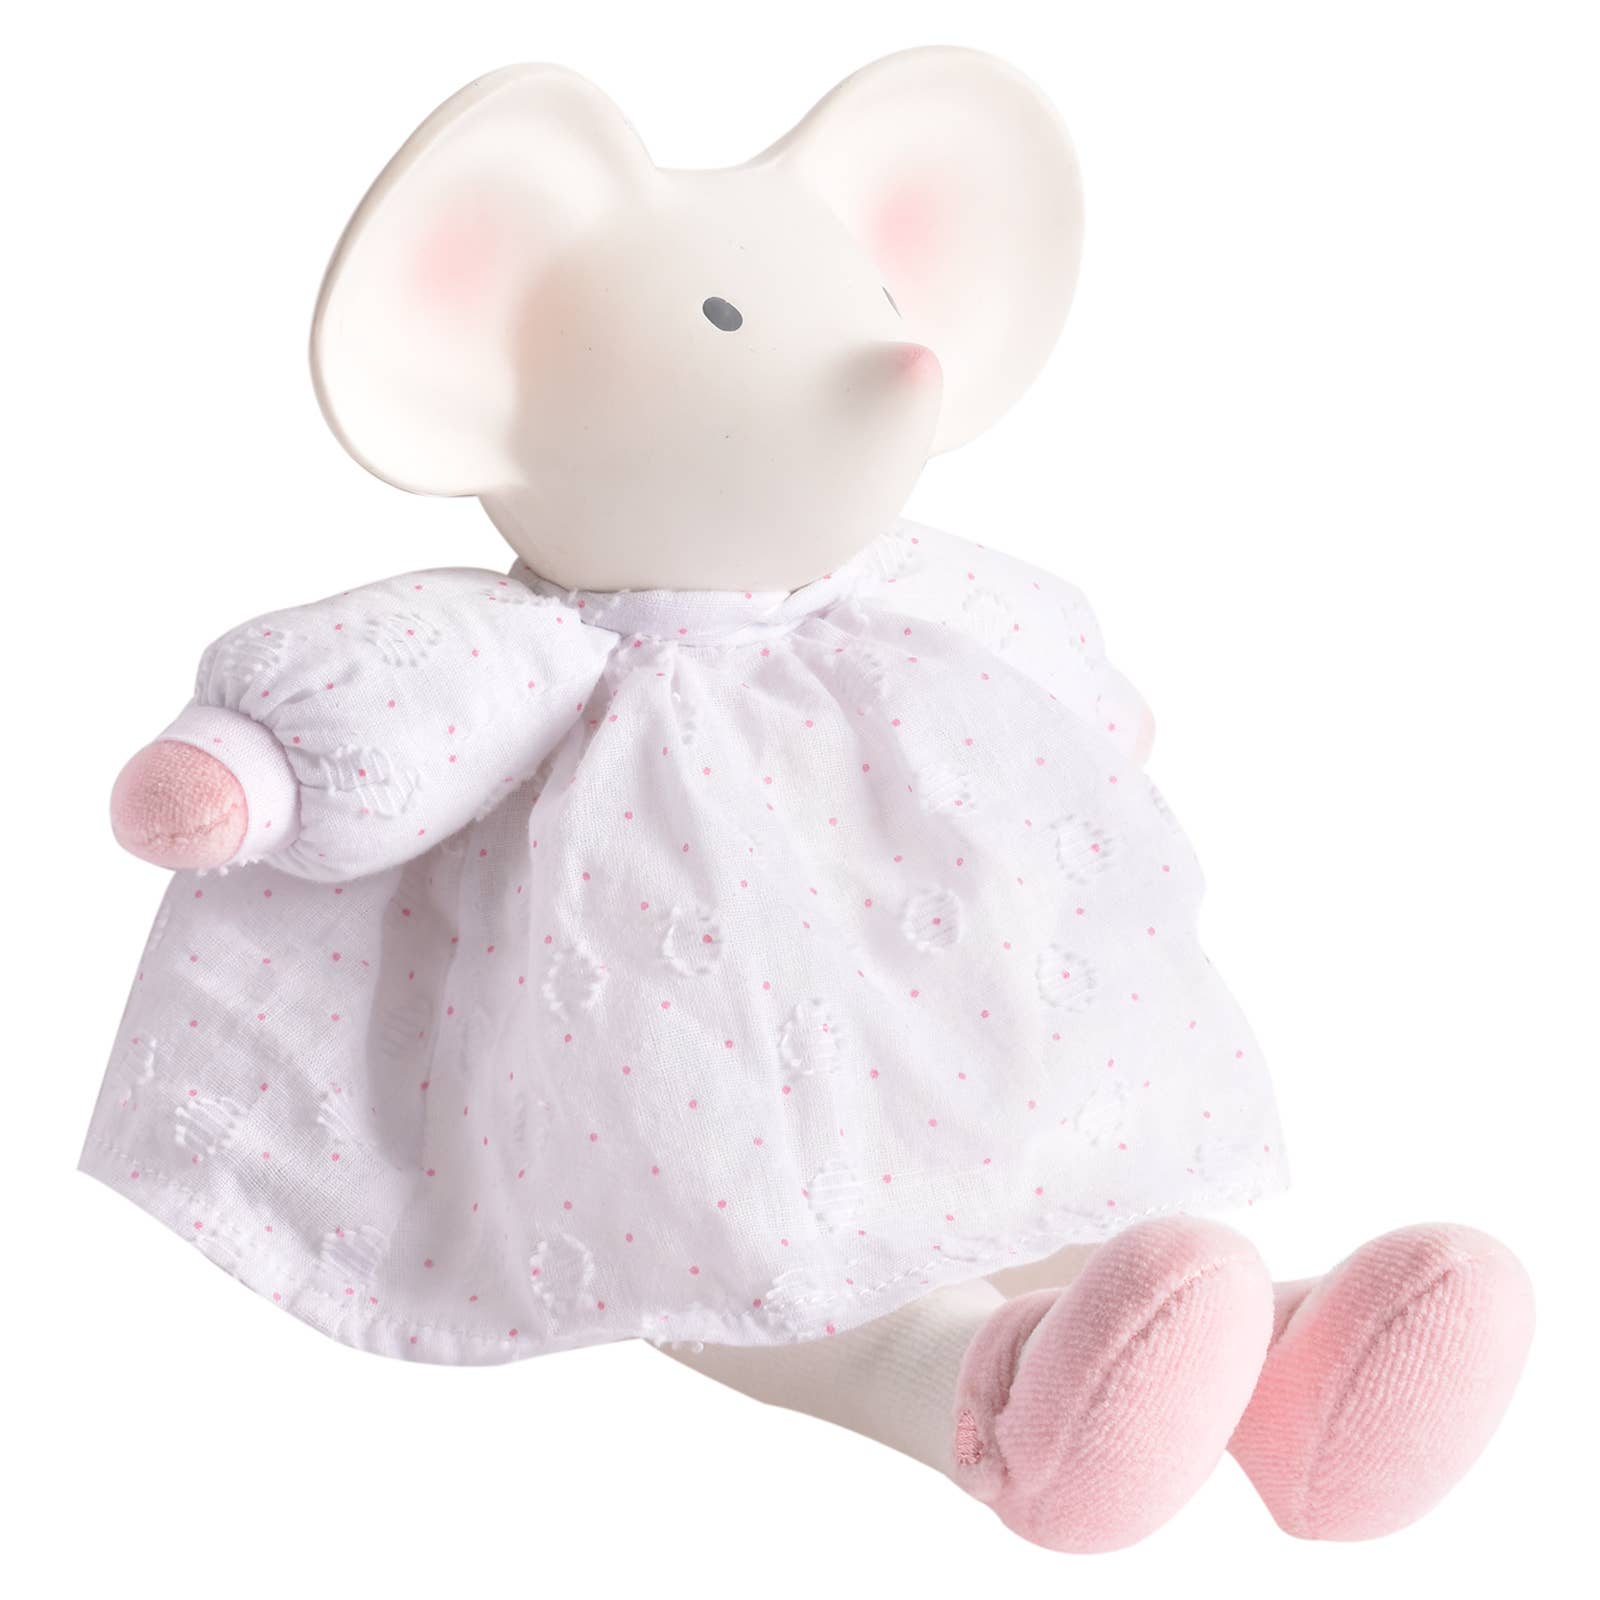 Tikiri Toys - Mini Meiya the Mouse Rubber Head Toy